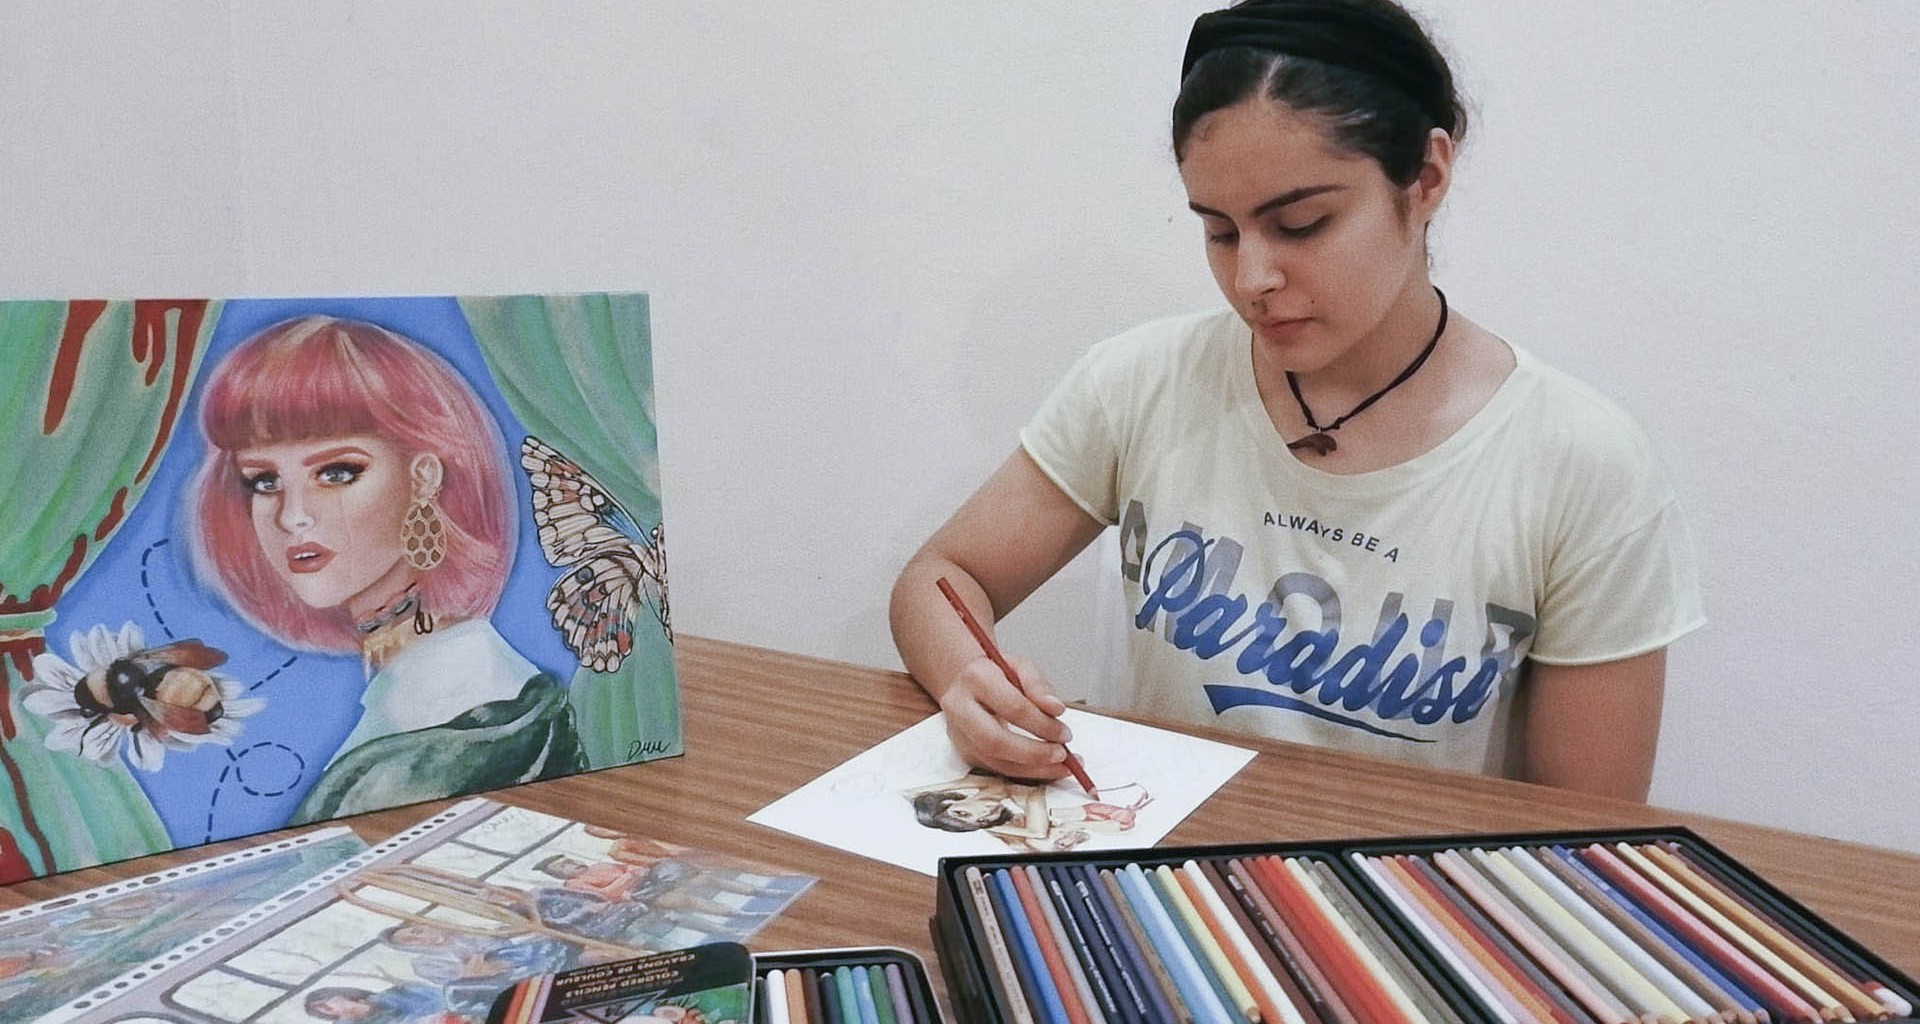 Pinceladas de talento. 14 años pintando emociones y paisajes